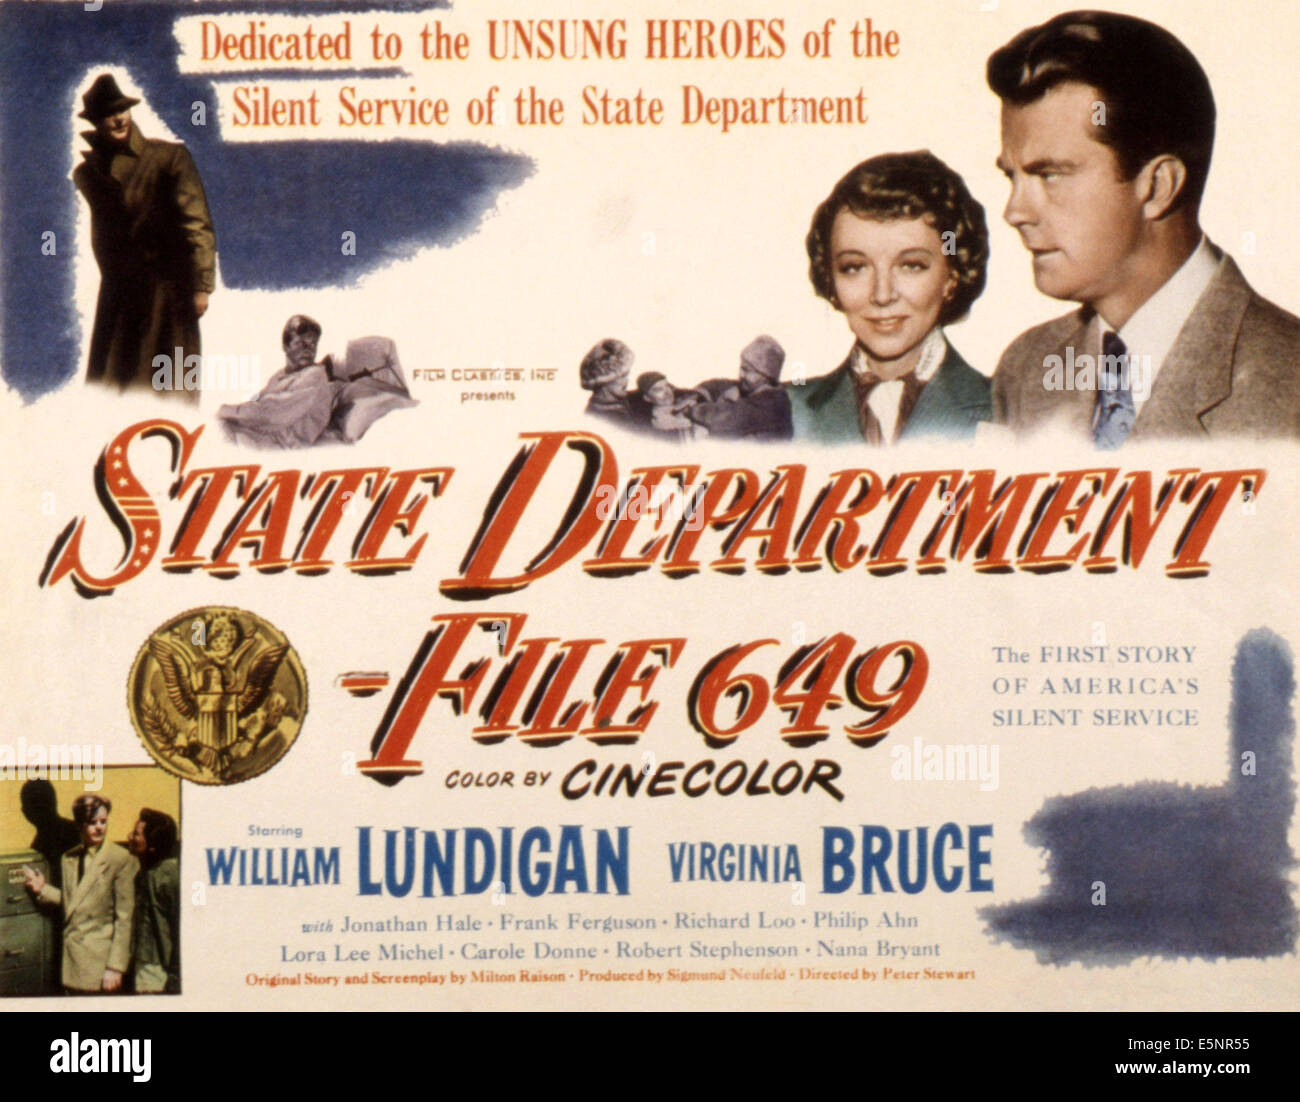 STATE DEPARTMENT: FILE 649, William Lundigan, Virginia Bruce, 1949 Stock Photo